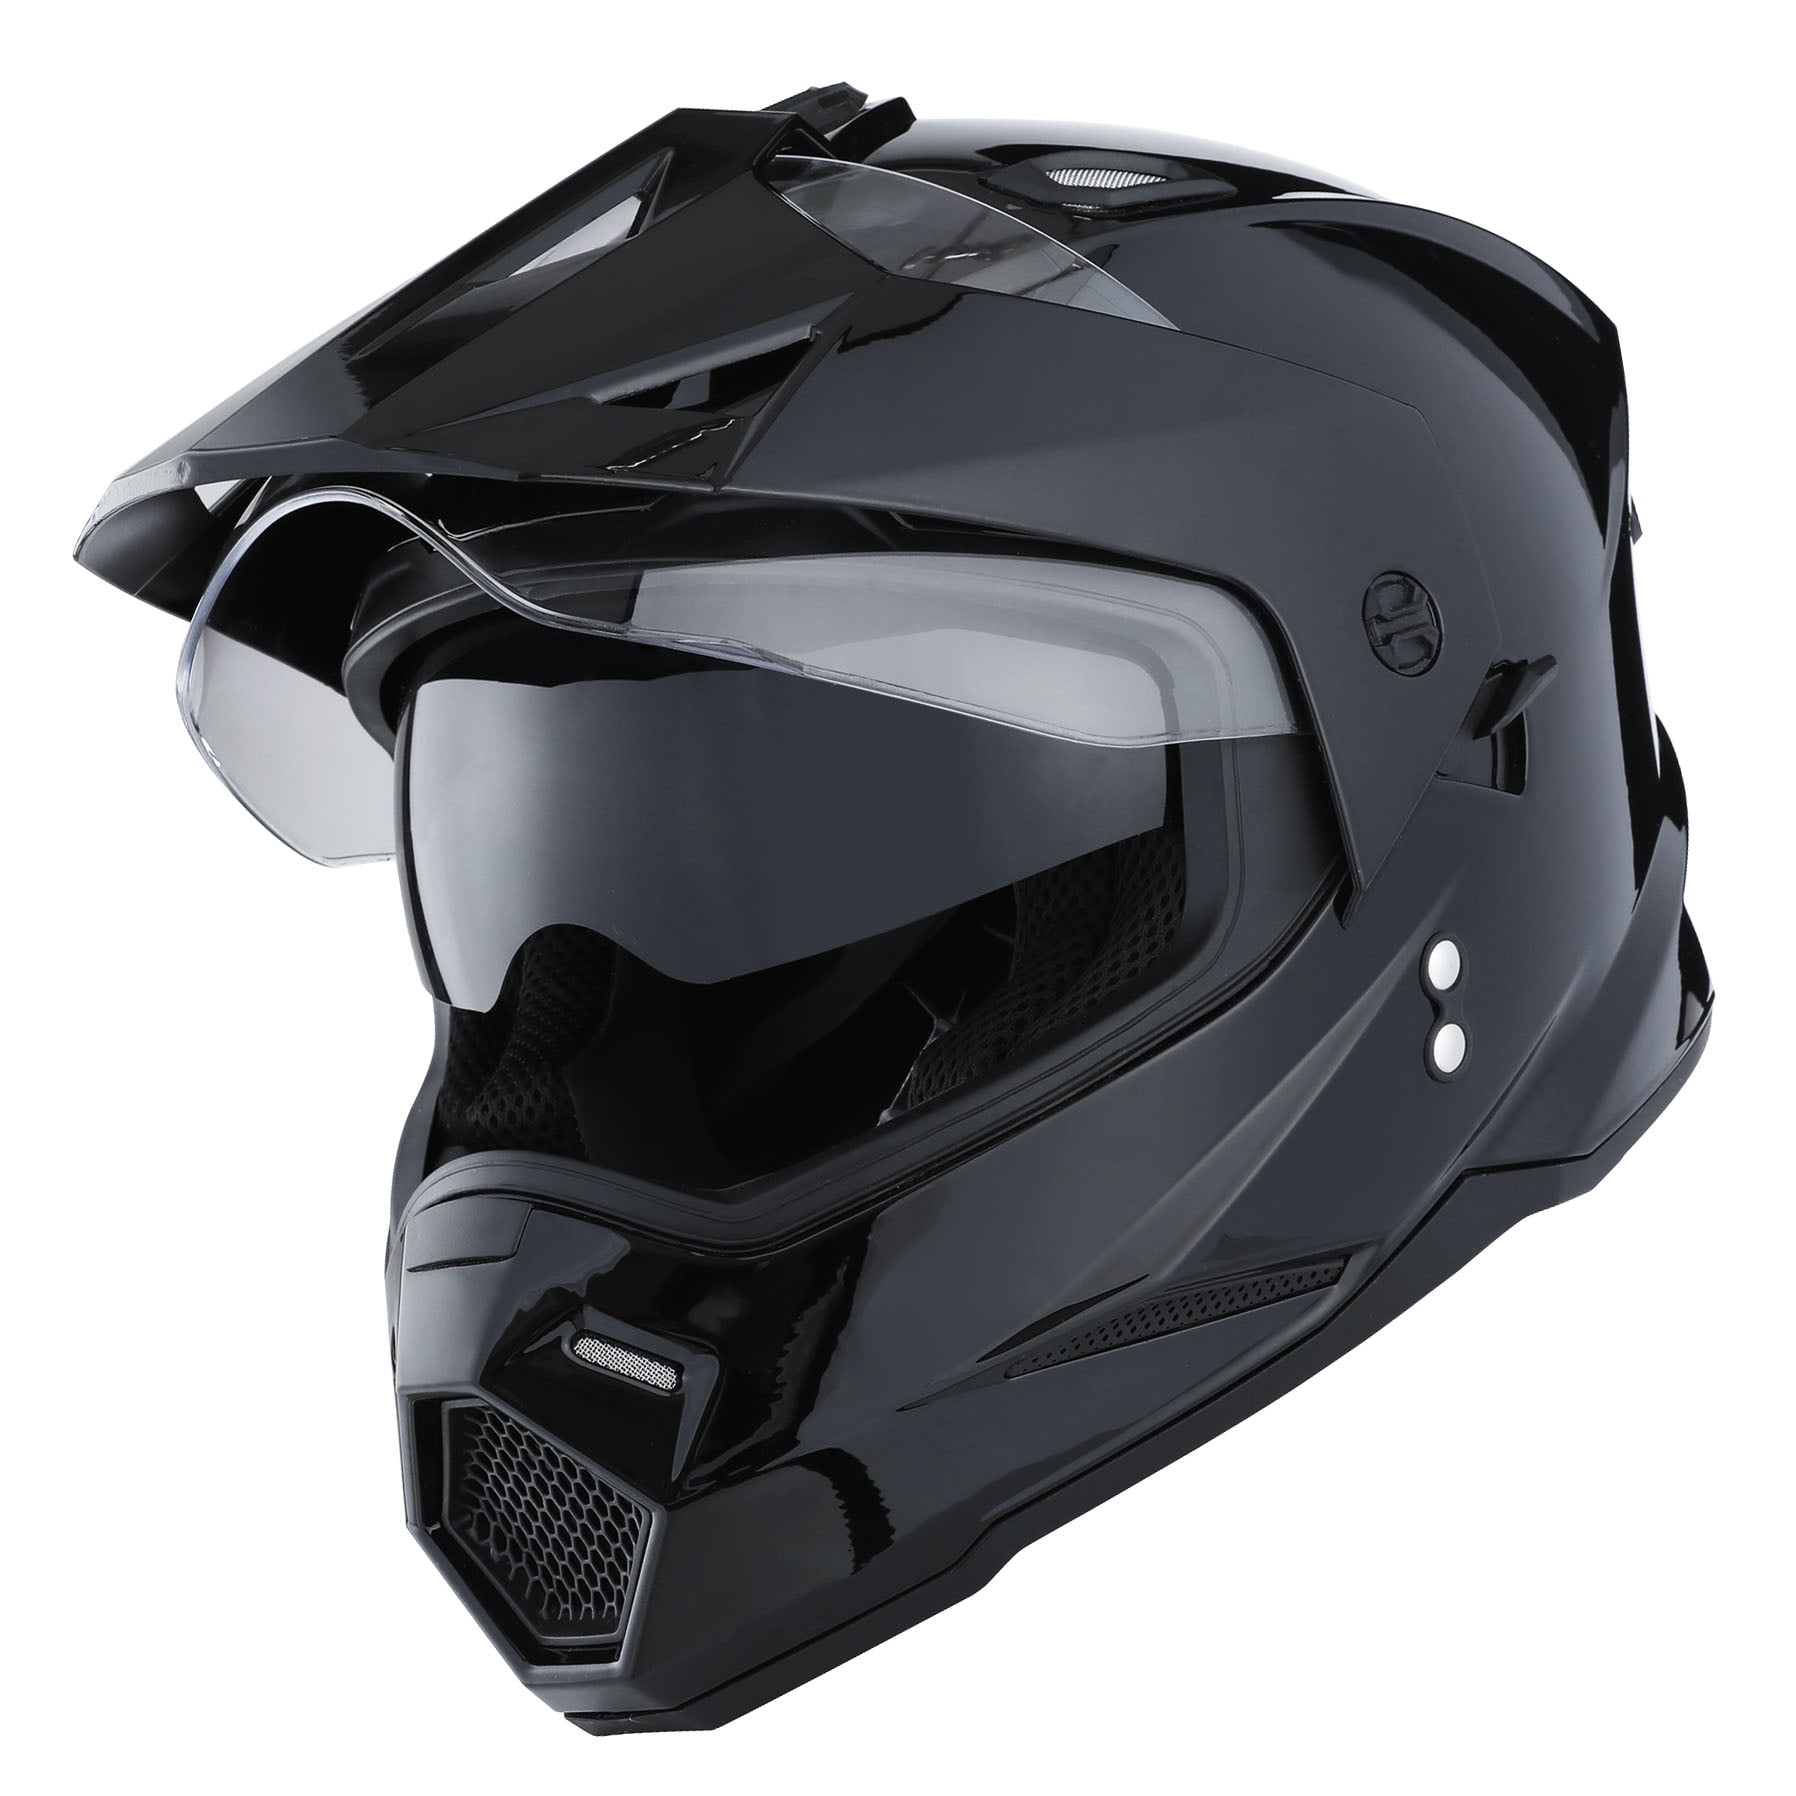 1Storm Dual Sports Motorcycle Motocross Helmet Dual Visor Helmet Racing Style HF802; Glossy